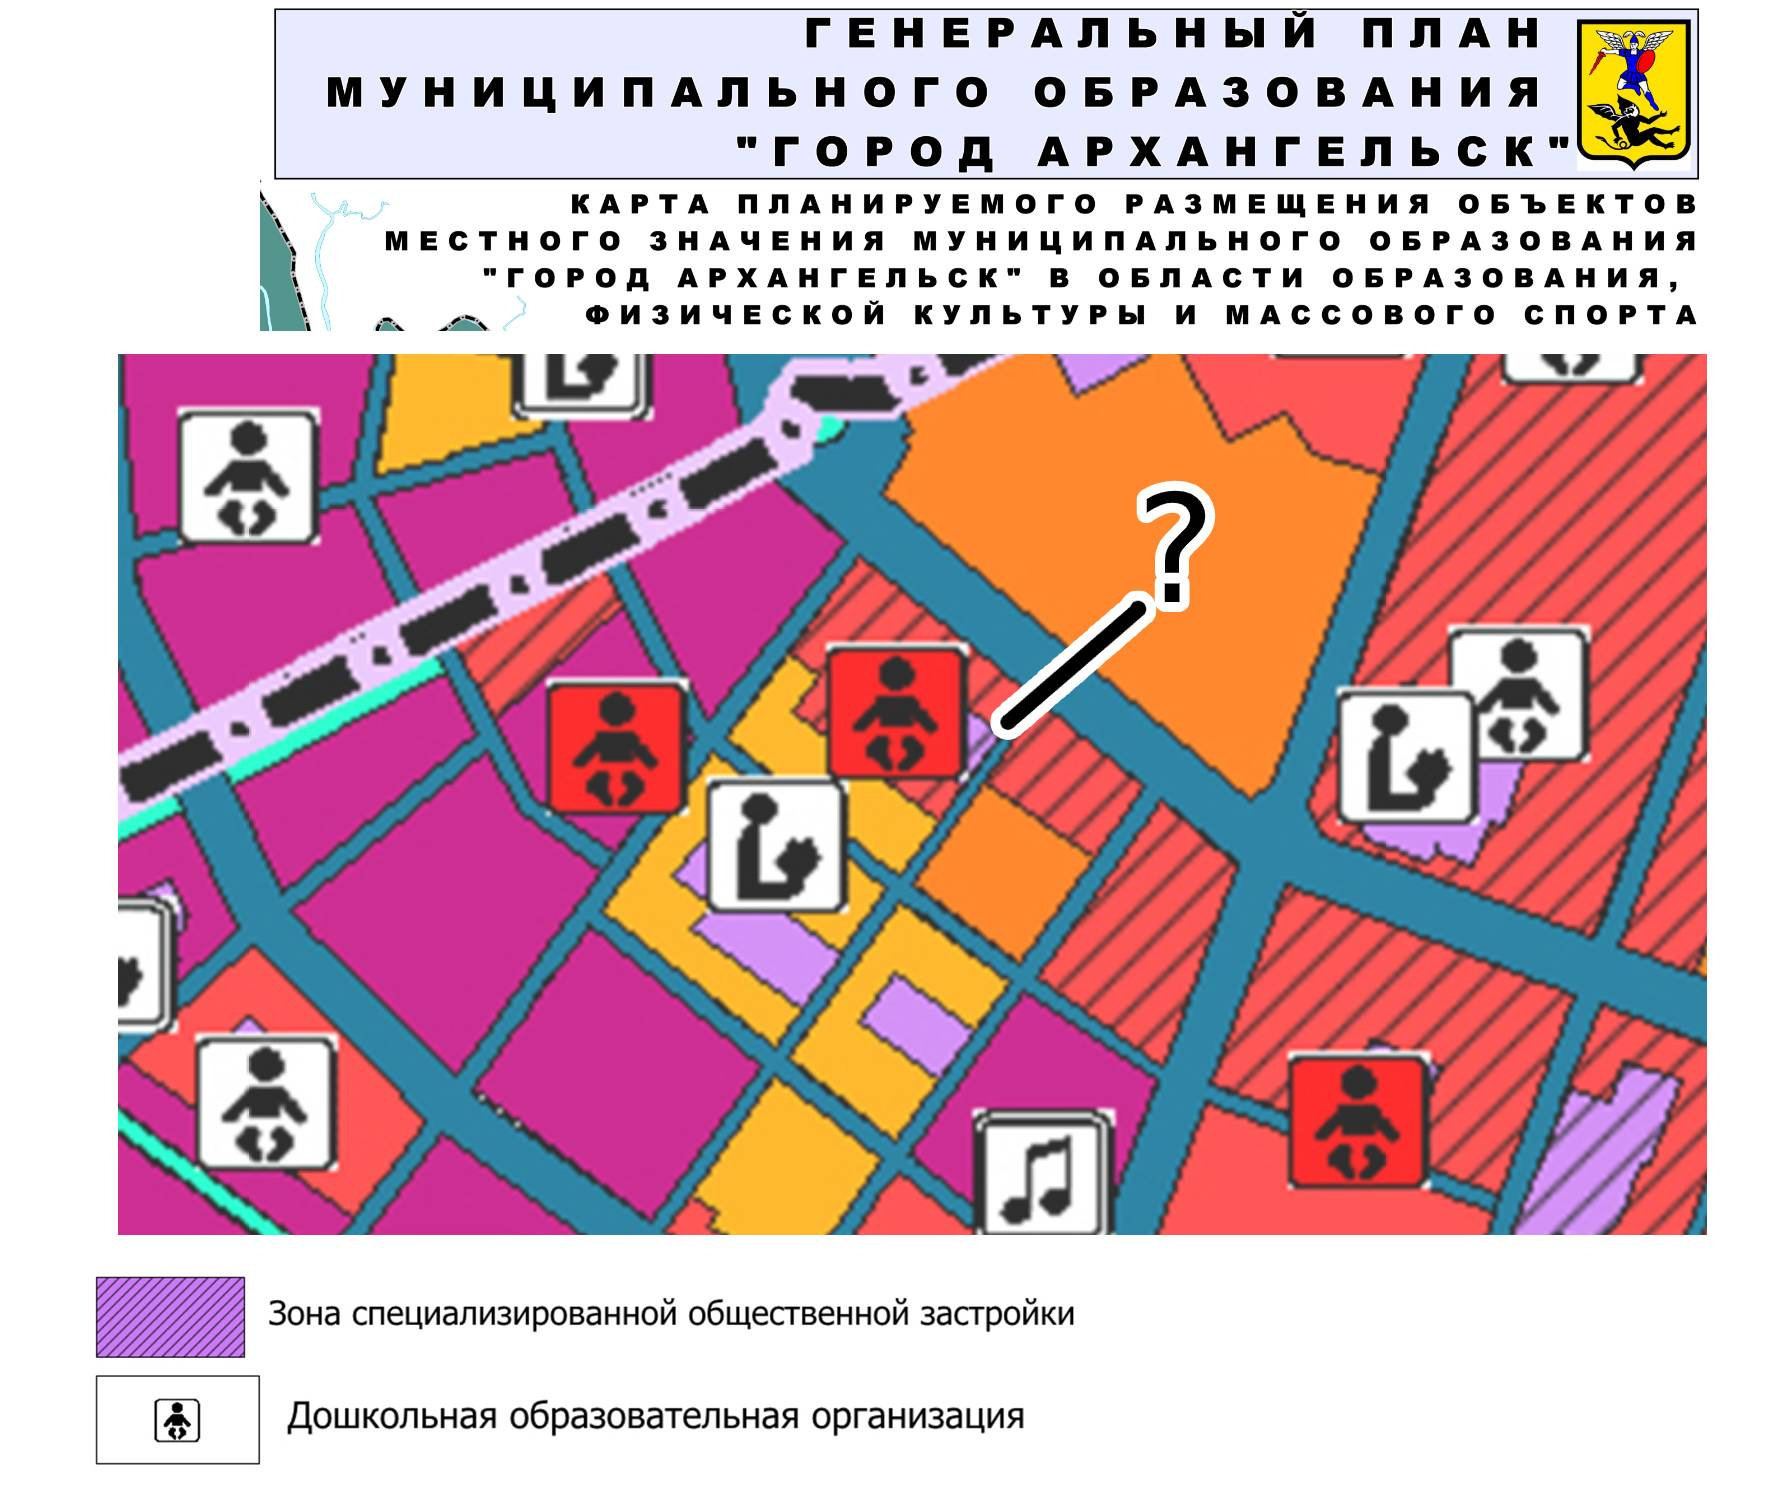 В новом генплане Архангельска, принятом в 2019 году, в квартале предусмотрена жилая застройка (красная зона со шриховкой) и общественная зона для детского сада (фиолетовая зона со значком малыша)